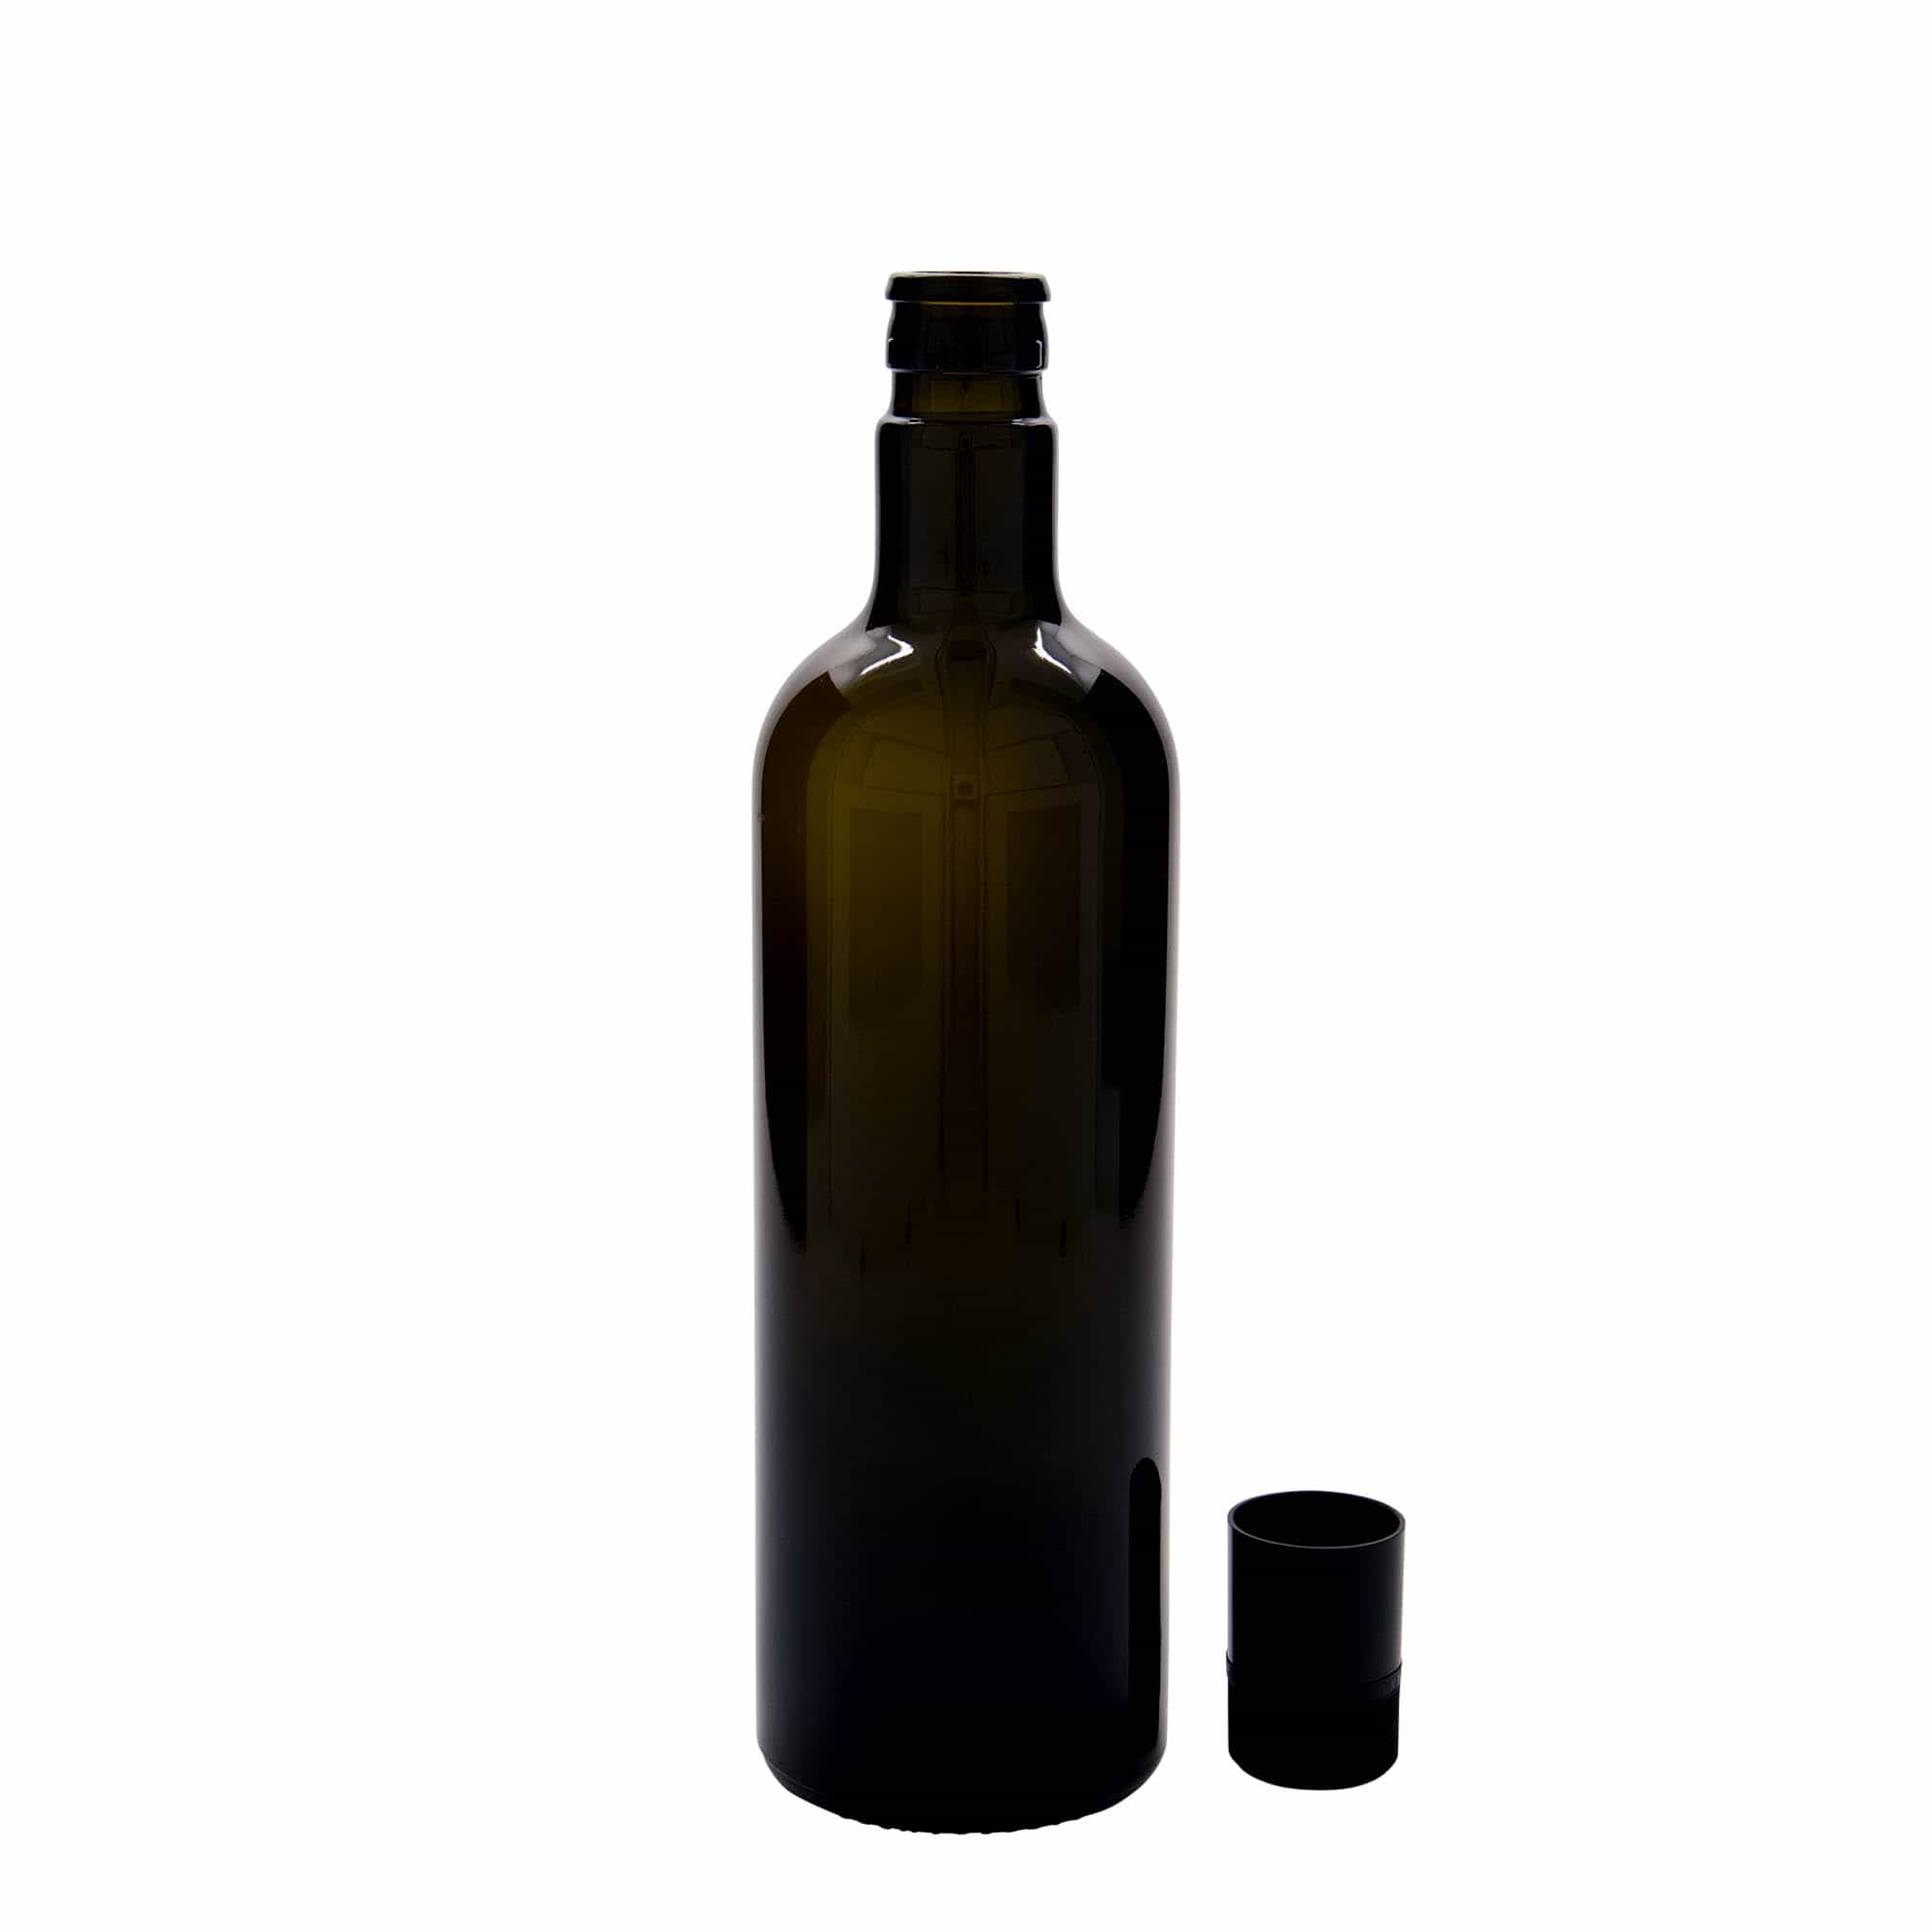 750 ml eddike-/olieflaske 'Willy New', glas, antikgrøn, åbning: DOP